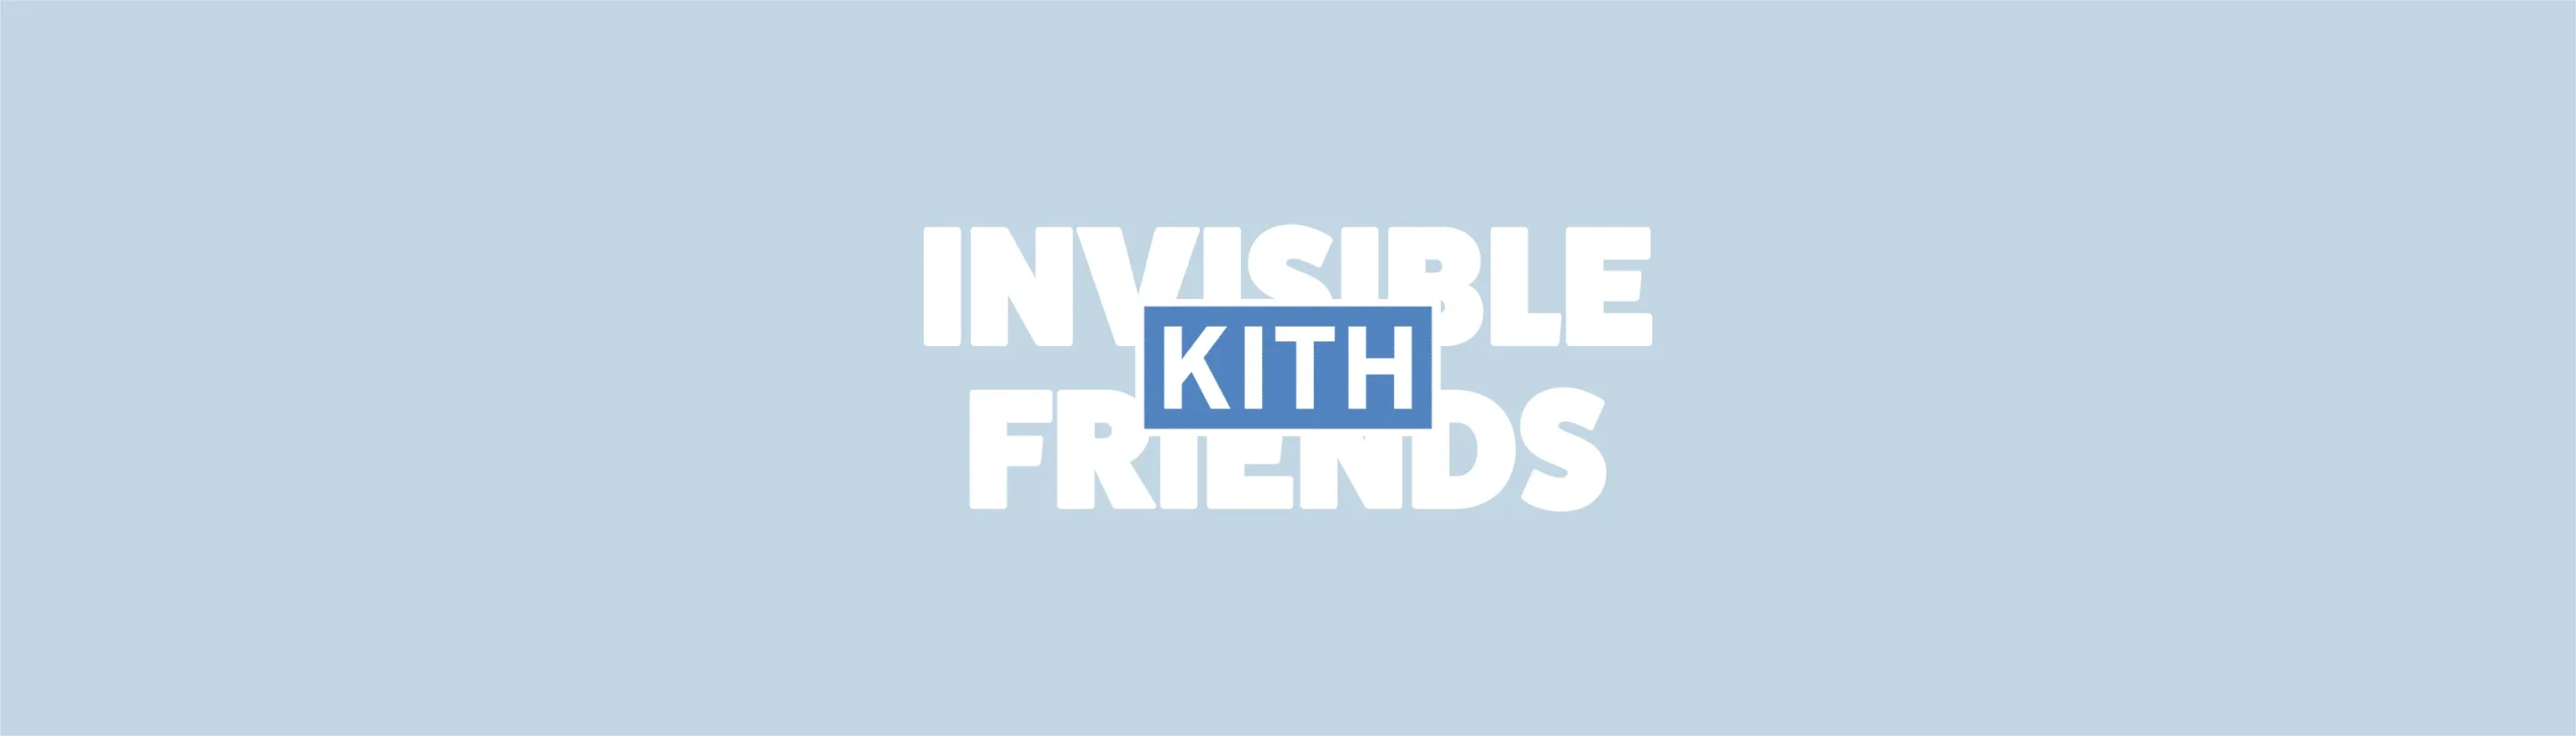 Kith-Friends-Deployer bannière